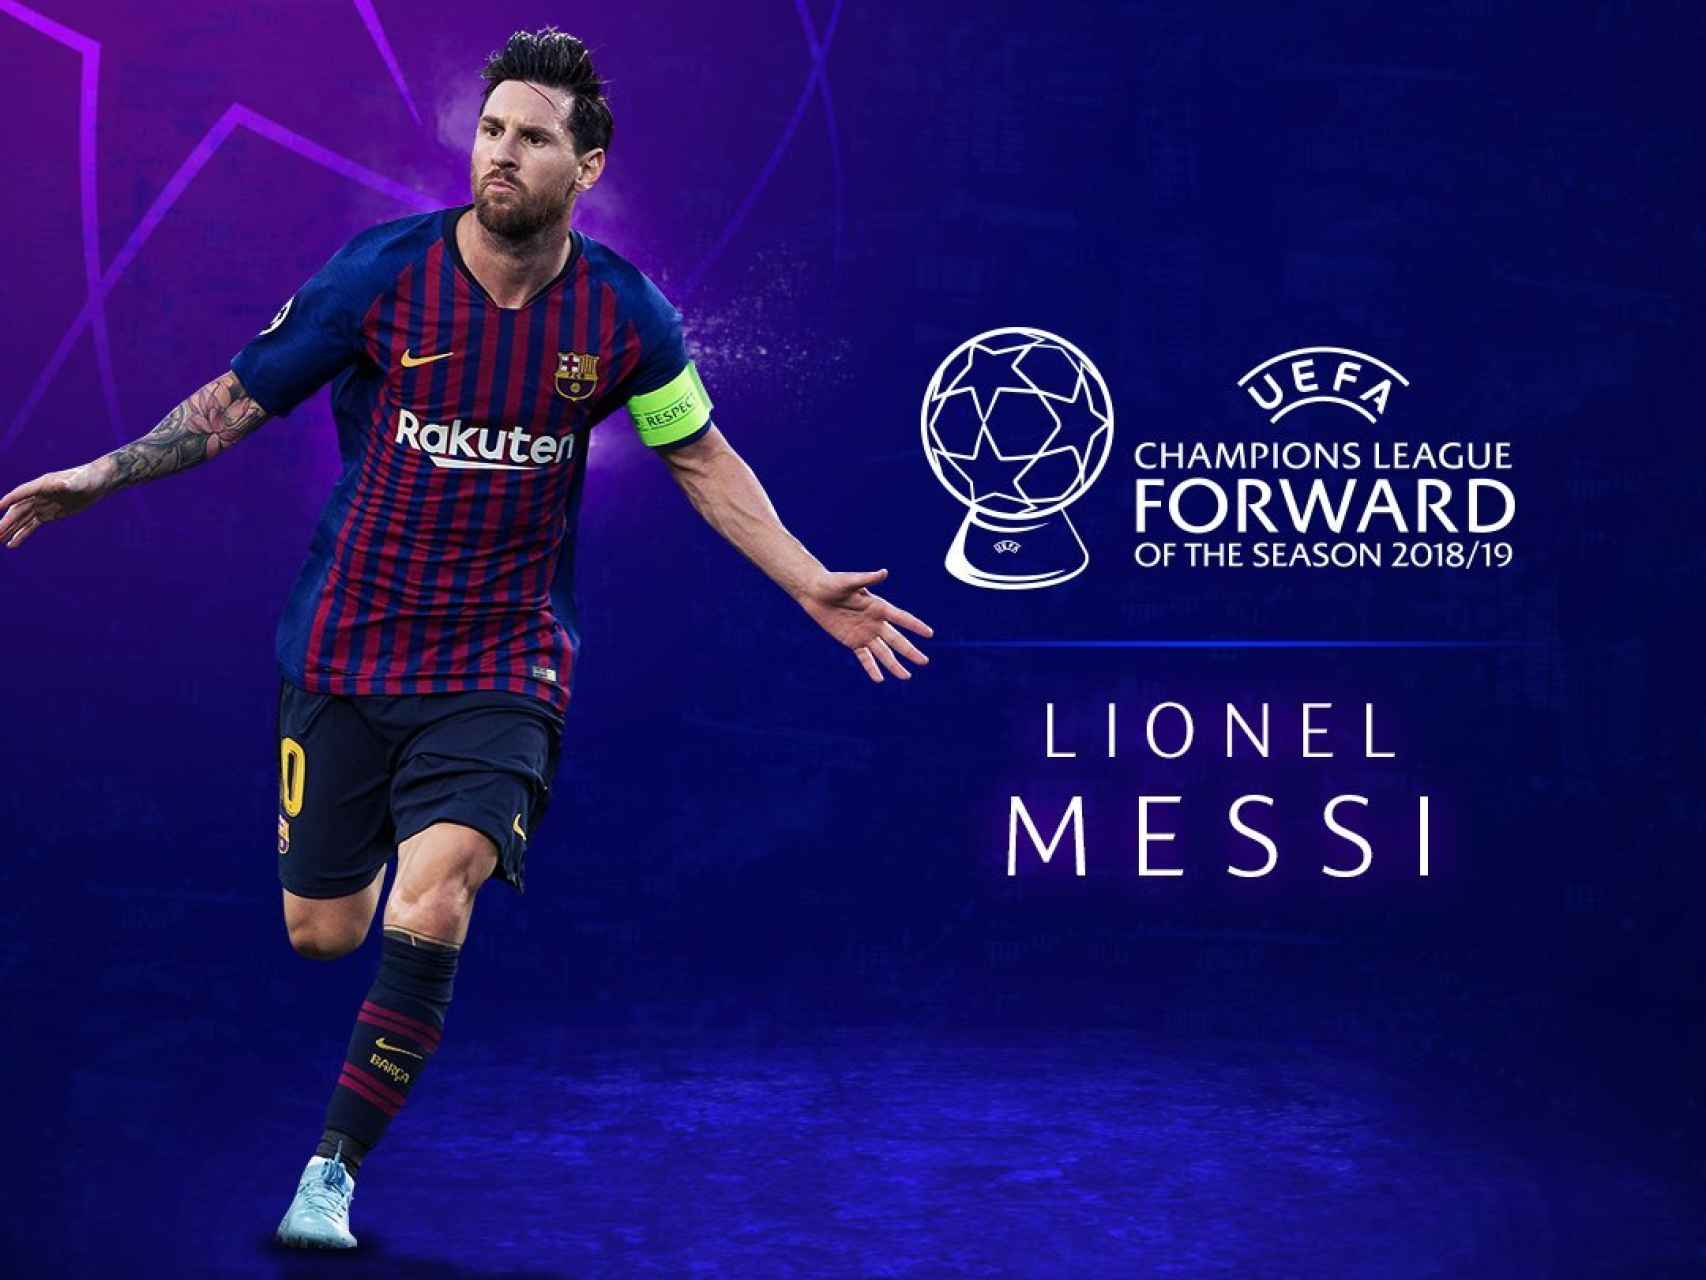 Lionel Messi, seleccionado como mejor delantero por la UEFA. Foto: Twitter (@LigadeCampeones)